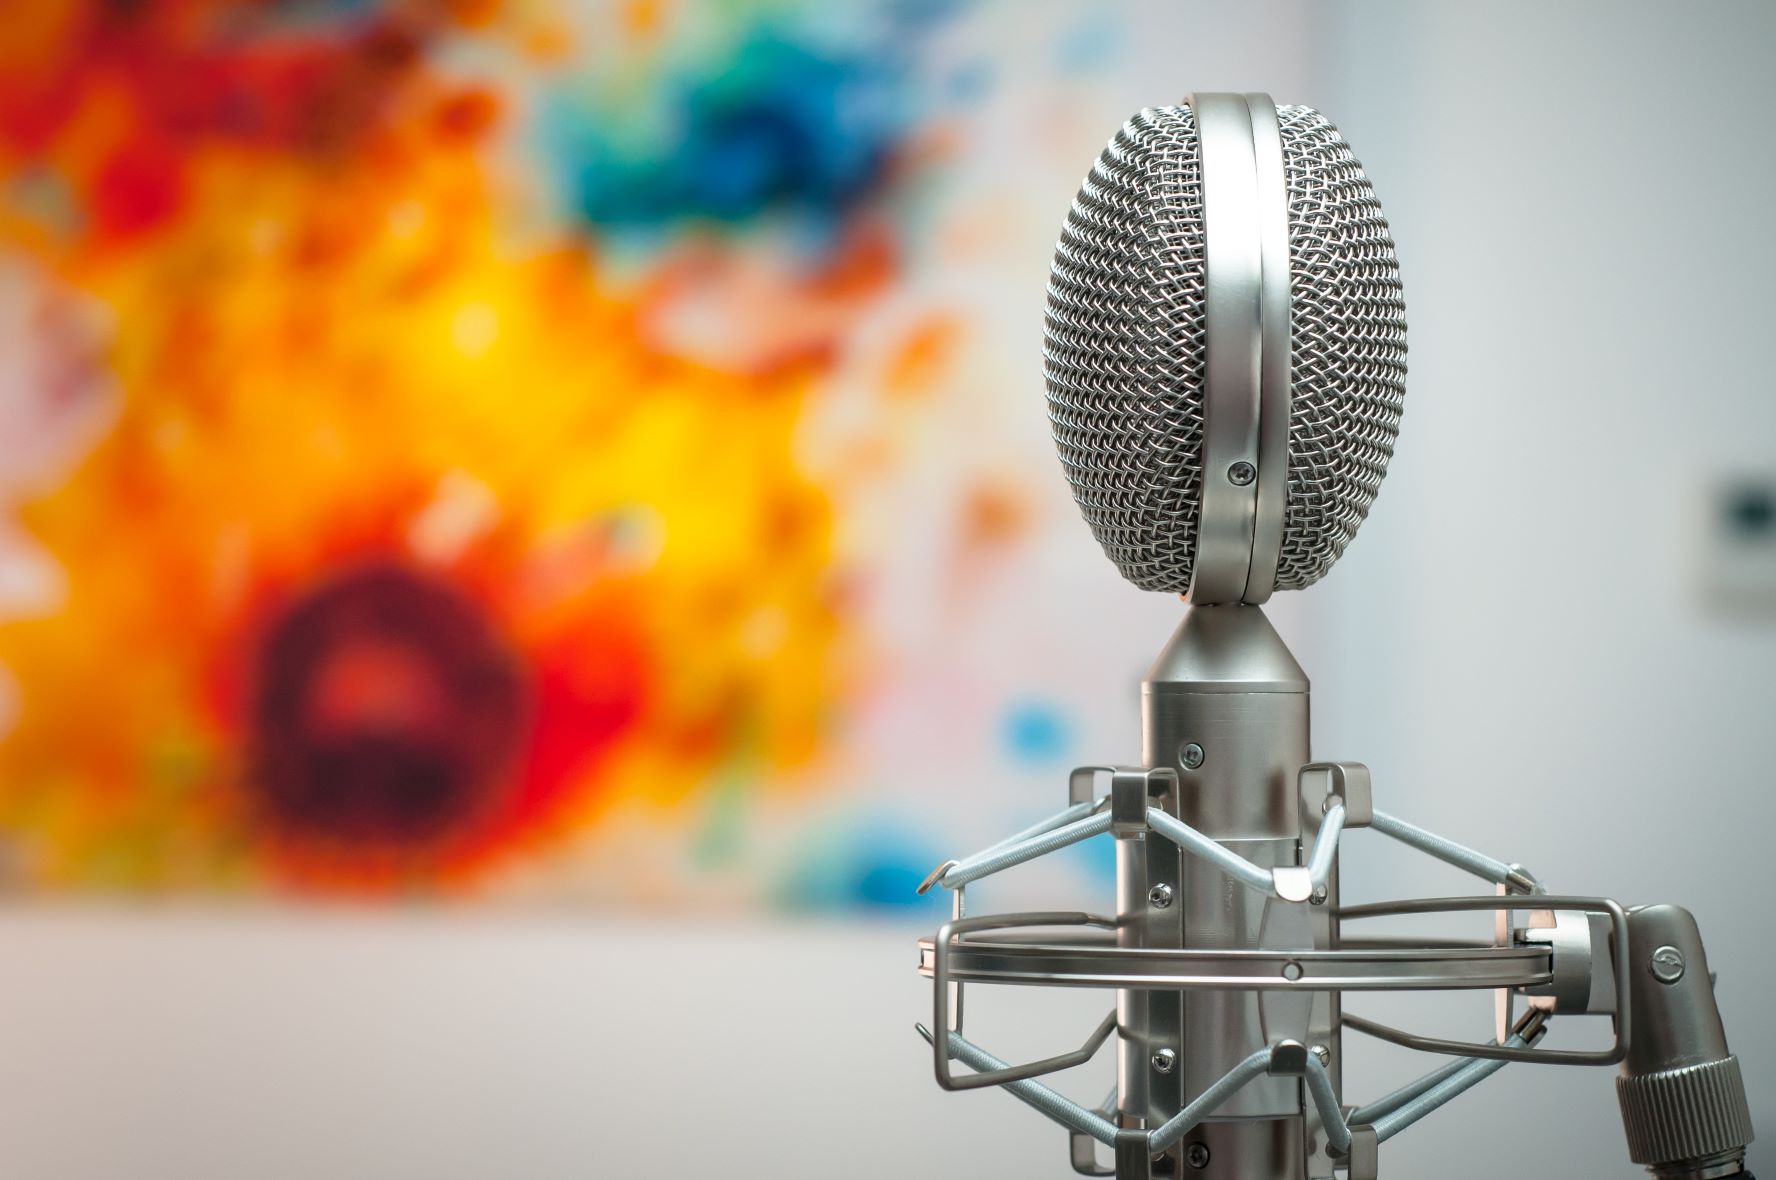 Das Bild zeit ein silbernes Mikrofon, wie es etwa für Radio- oder Podcastaufzeichnungen benutzt wird. Im Hintergrund ist verschwommen ein abstraktes Bild mit kräftigen Gelb- und Rottönen.